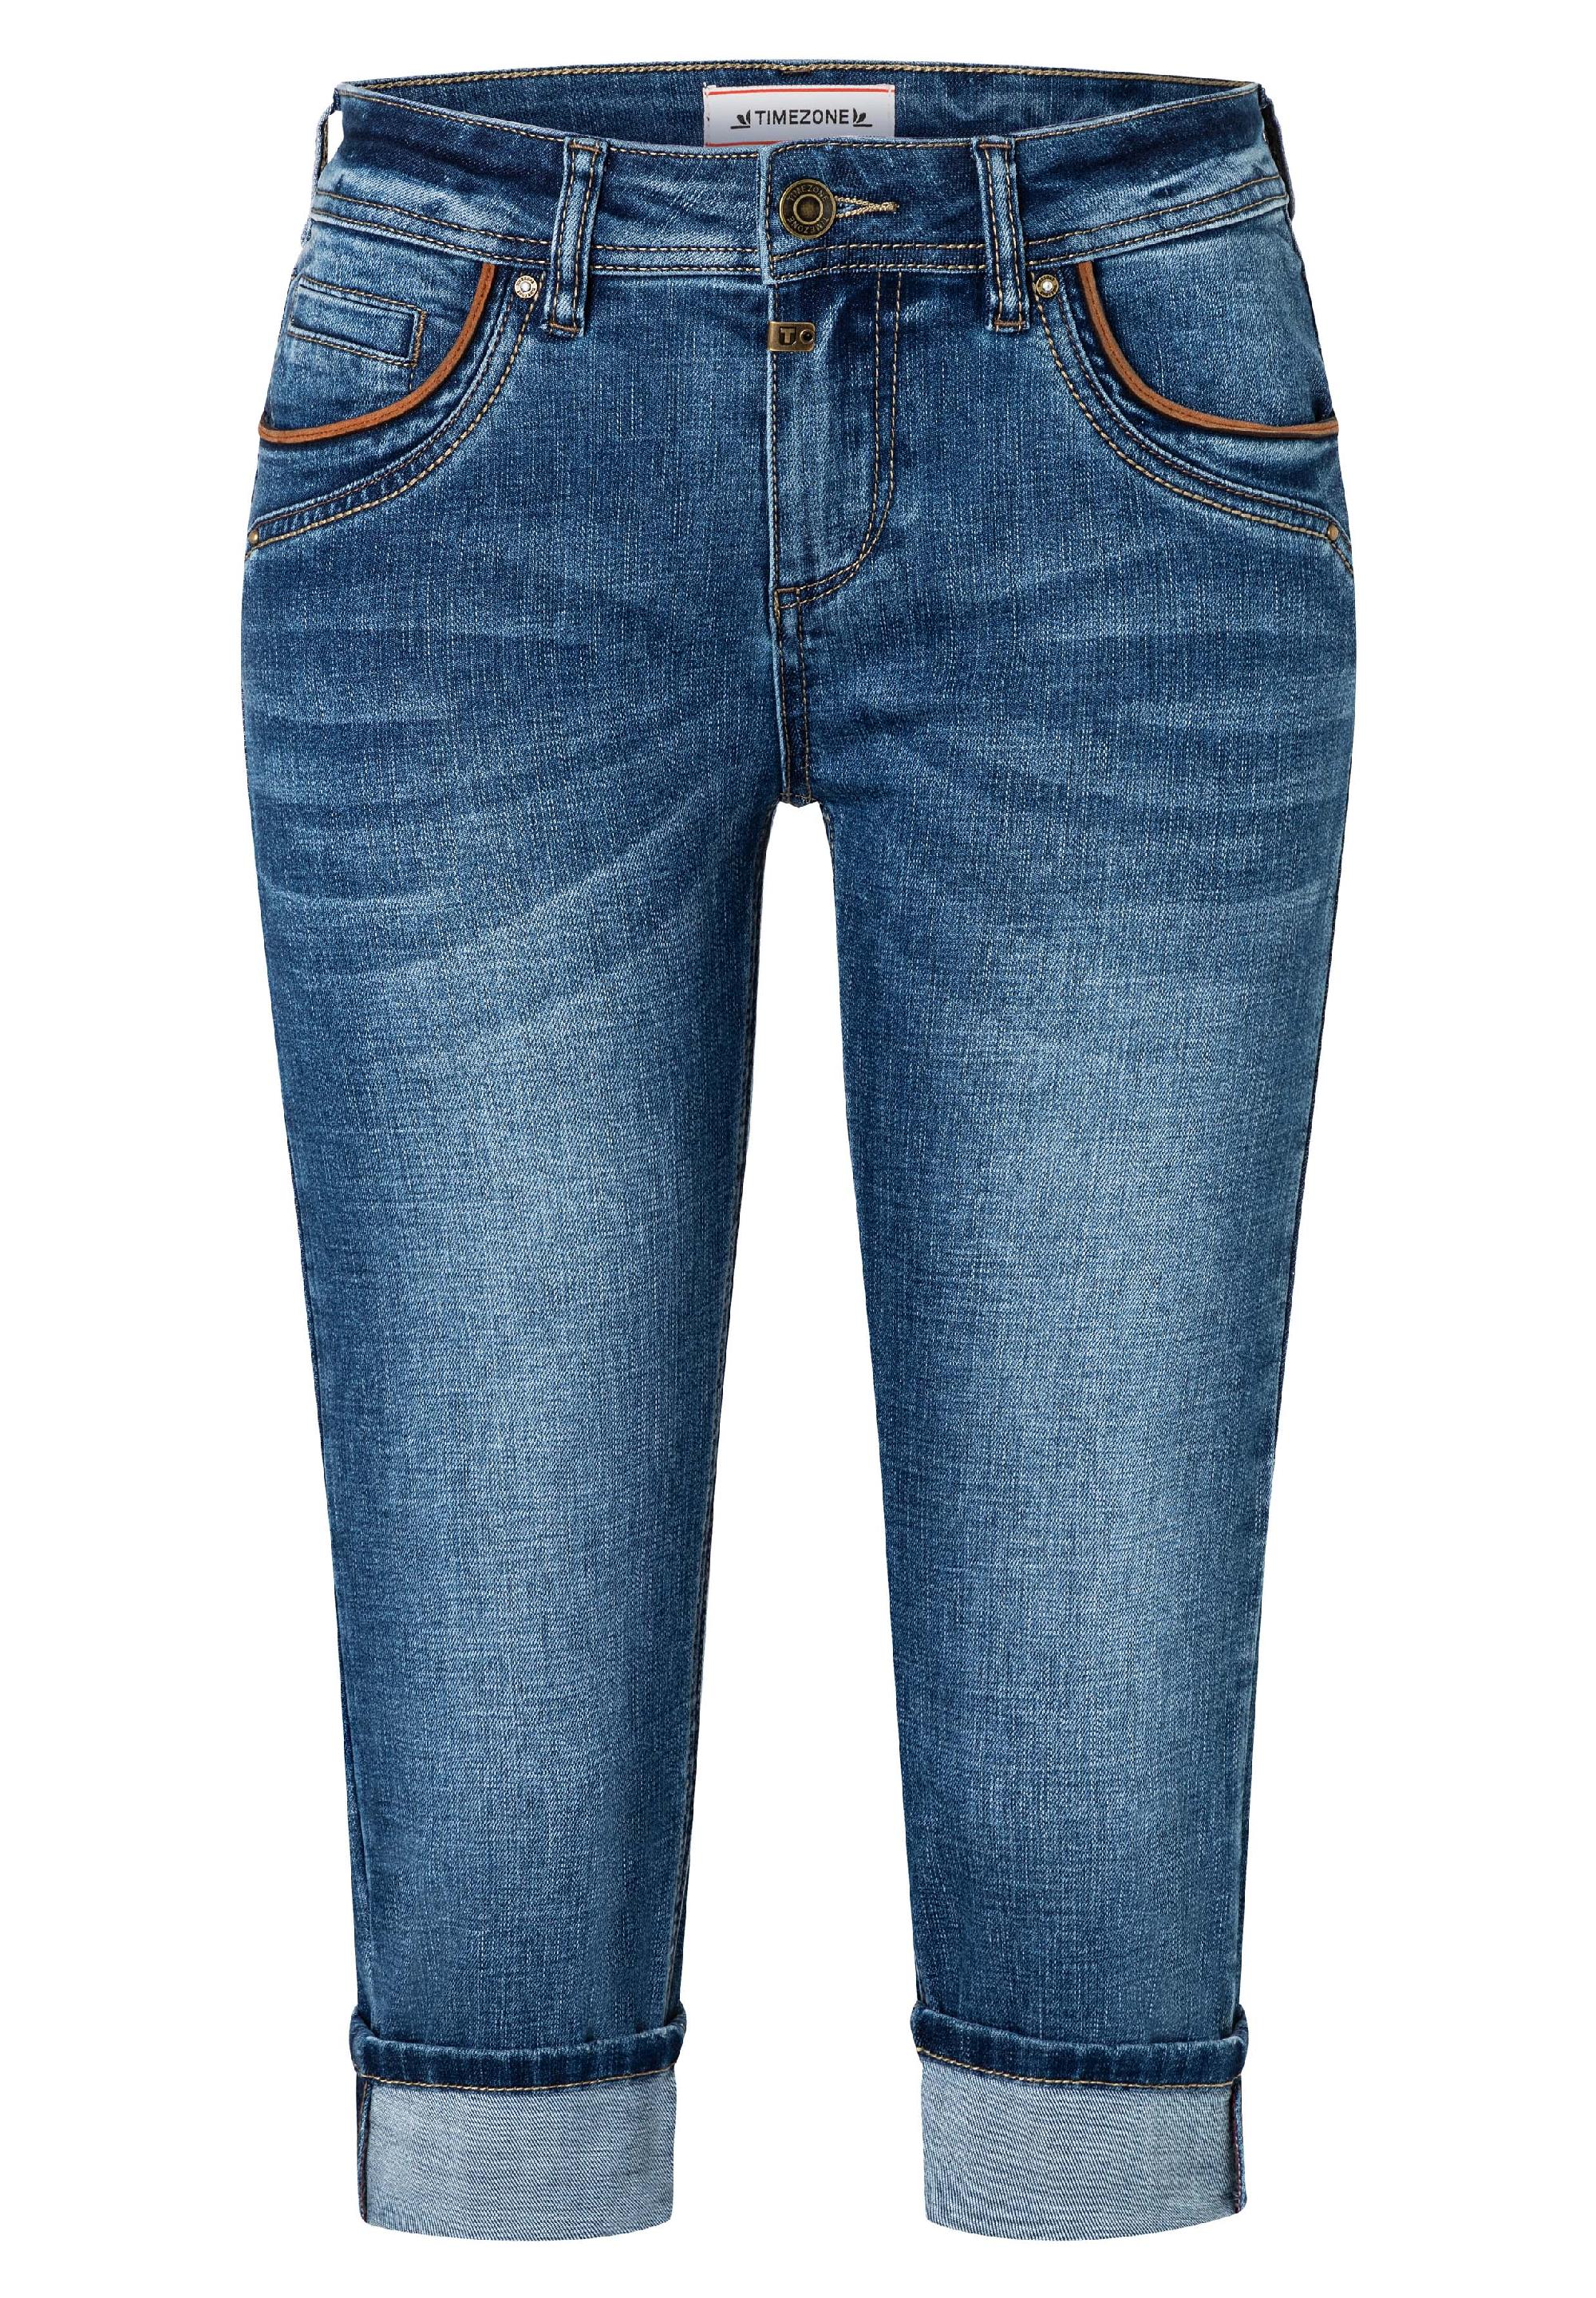 Damen Jeans aus Flex-Denim mit von Lederdetails TIMEZONE